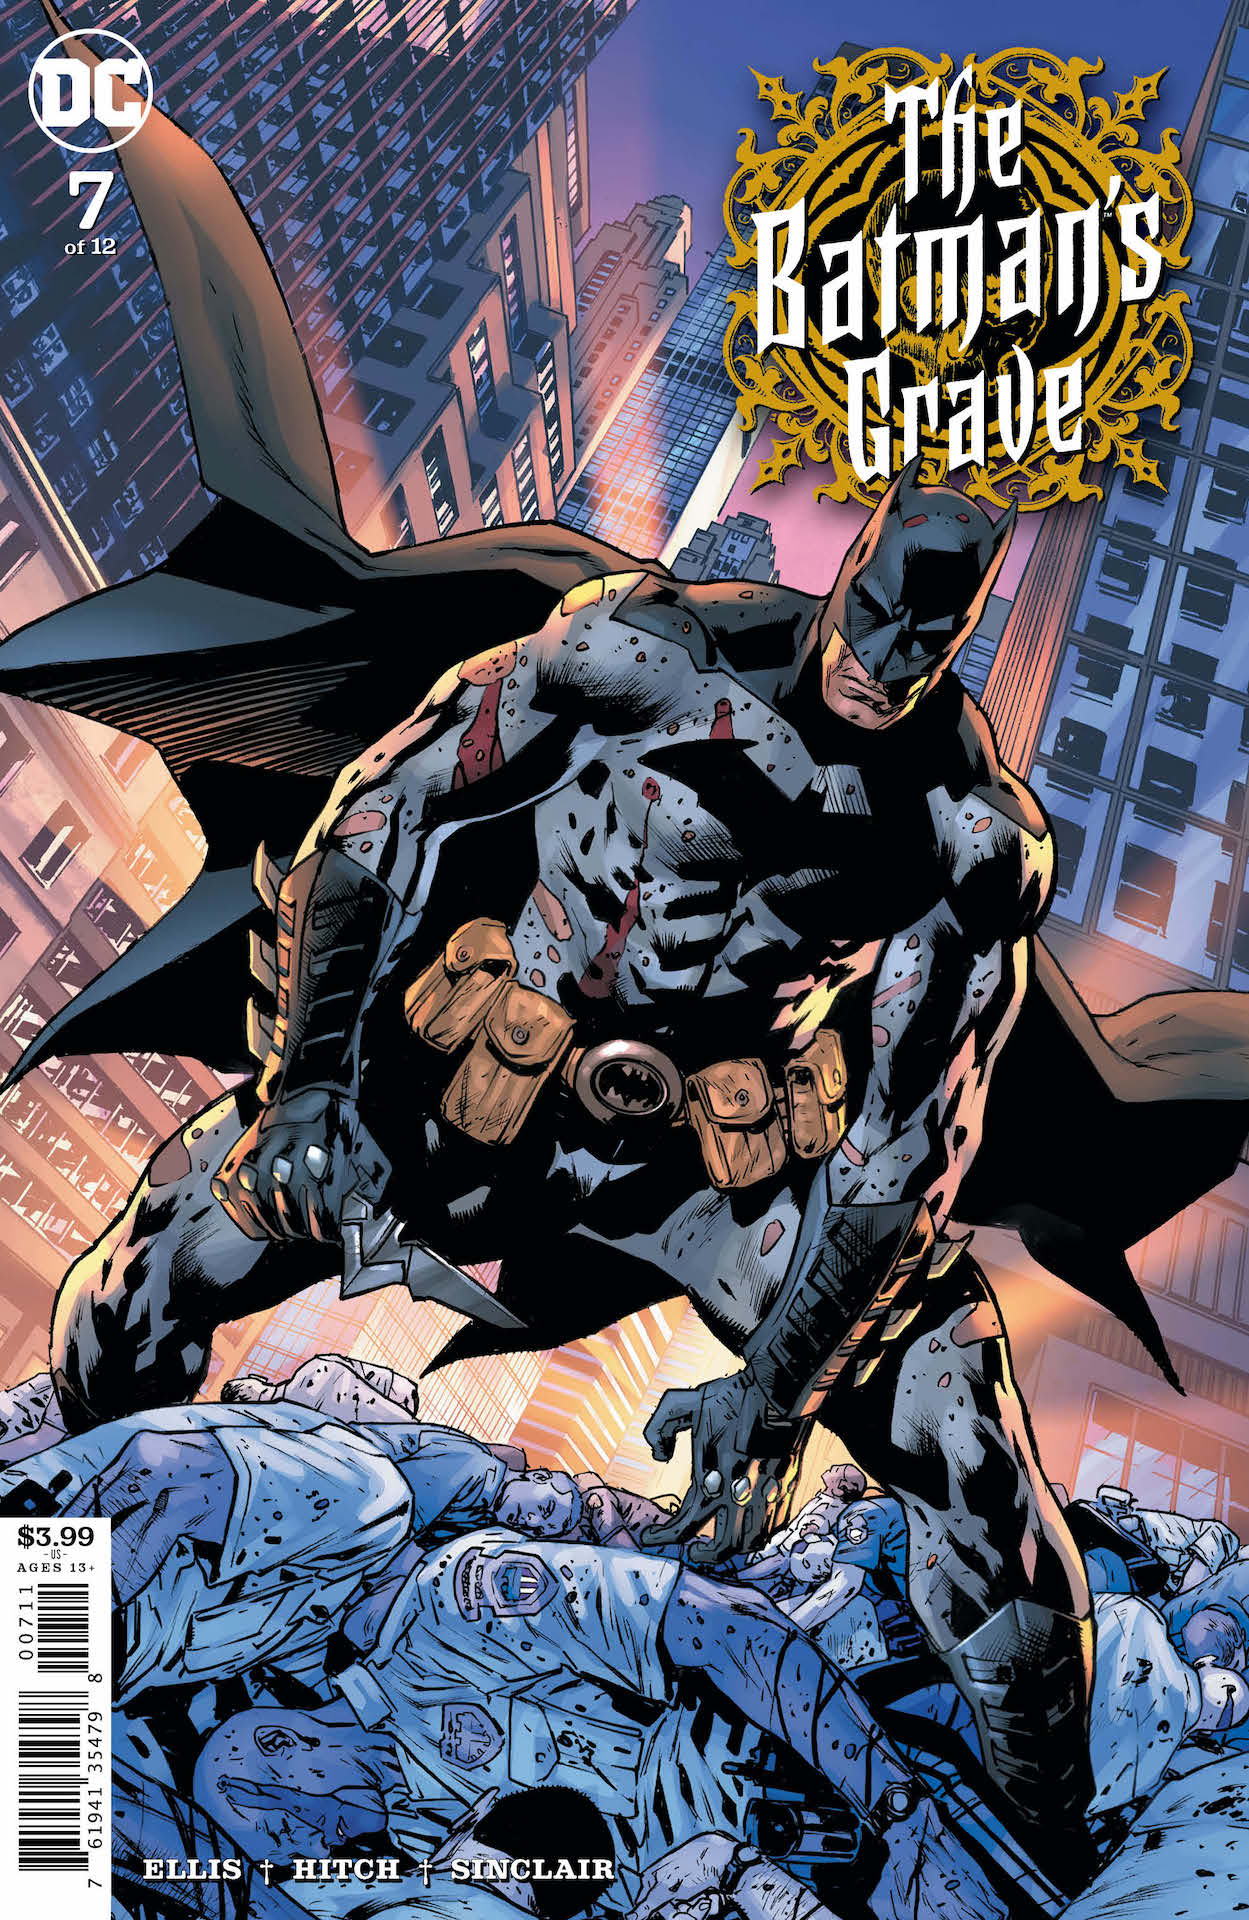 DC Preview: The Batman's Grave #7